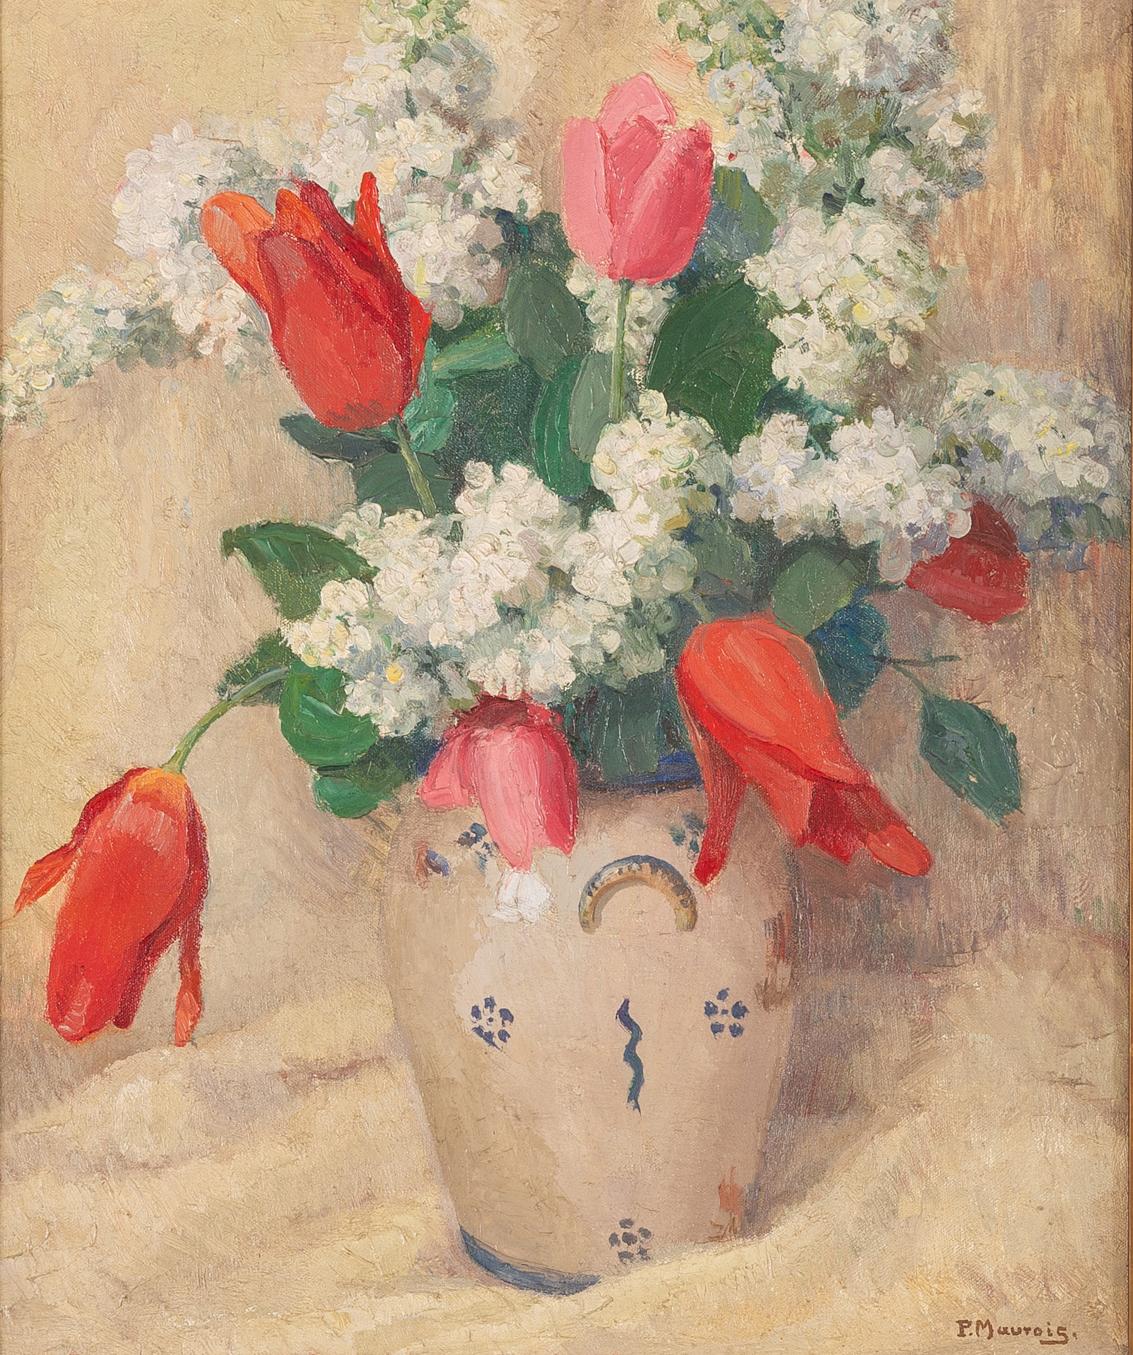 O/8173 - Huile sur toile, signée dans un cadre ancien.
Les tulipes sont des fleurs si particulières : dommage qu'elles se fanent rapidement. Le peintre a su en saisir la grâce et le charme.